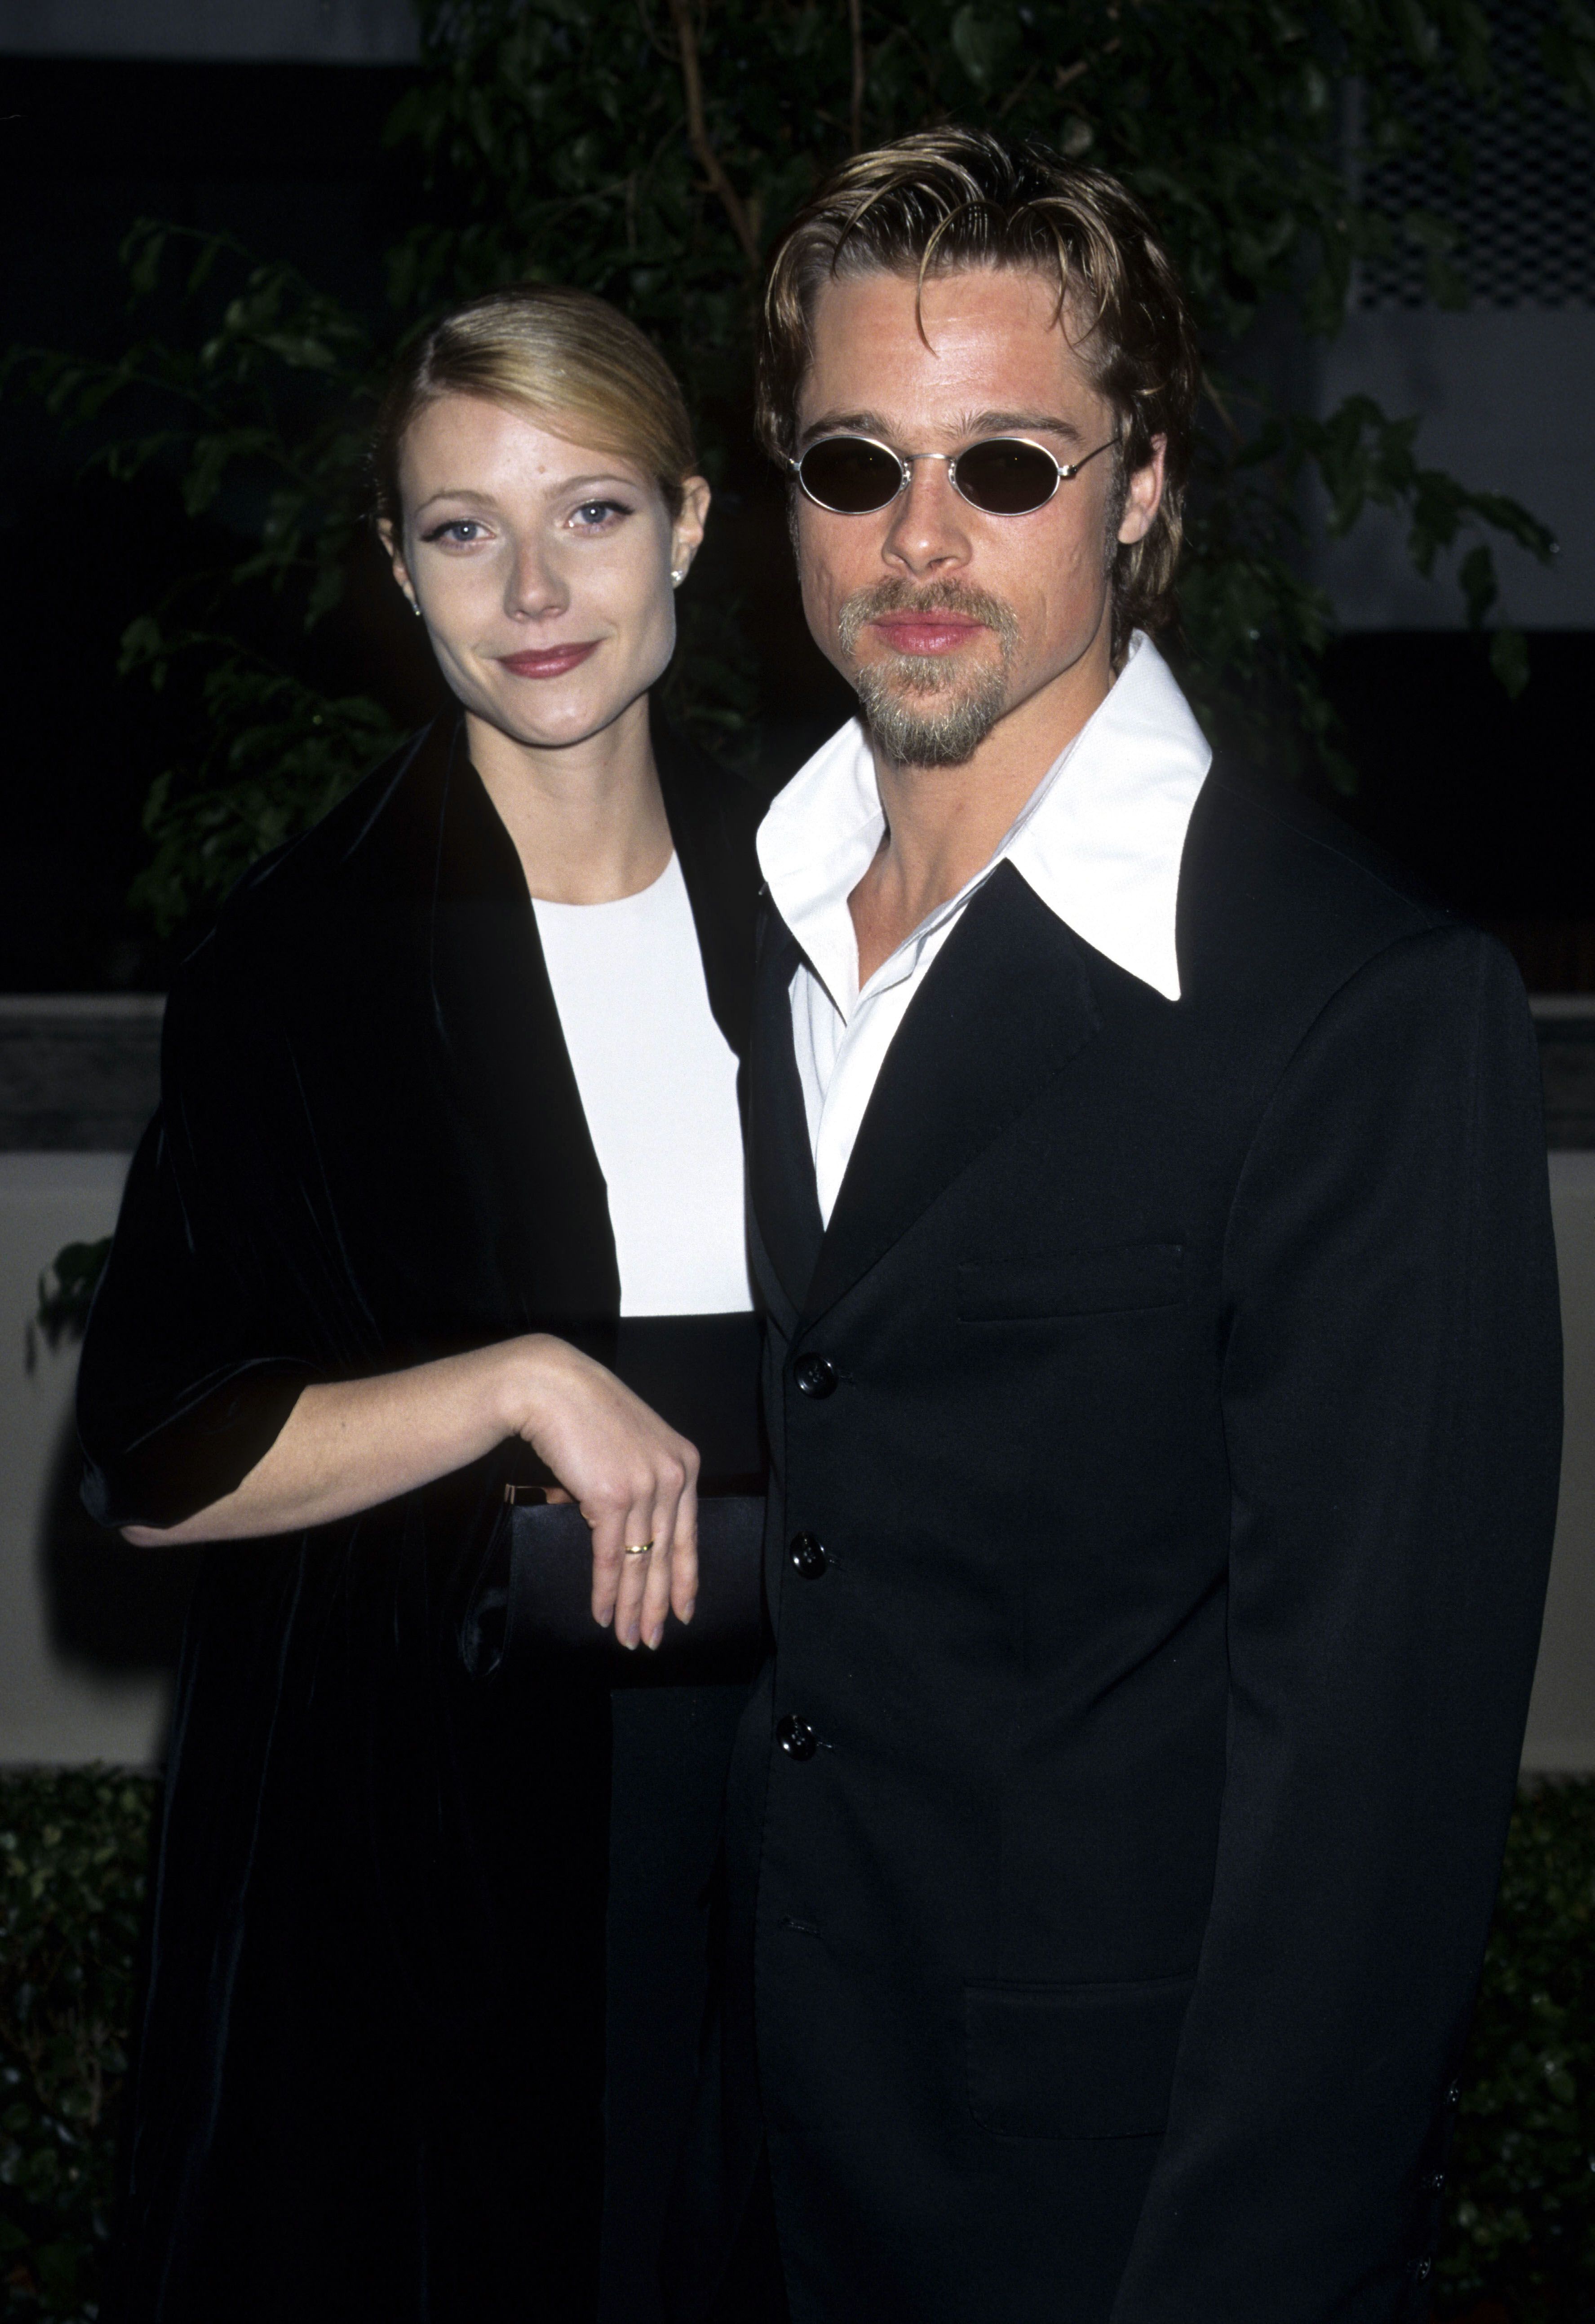 TBT: Juliette Lewis and Brad Pitt